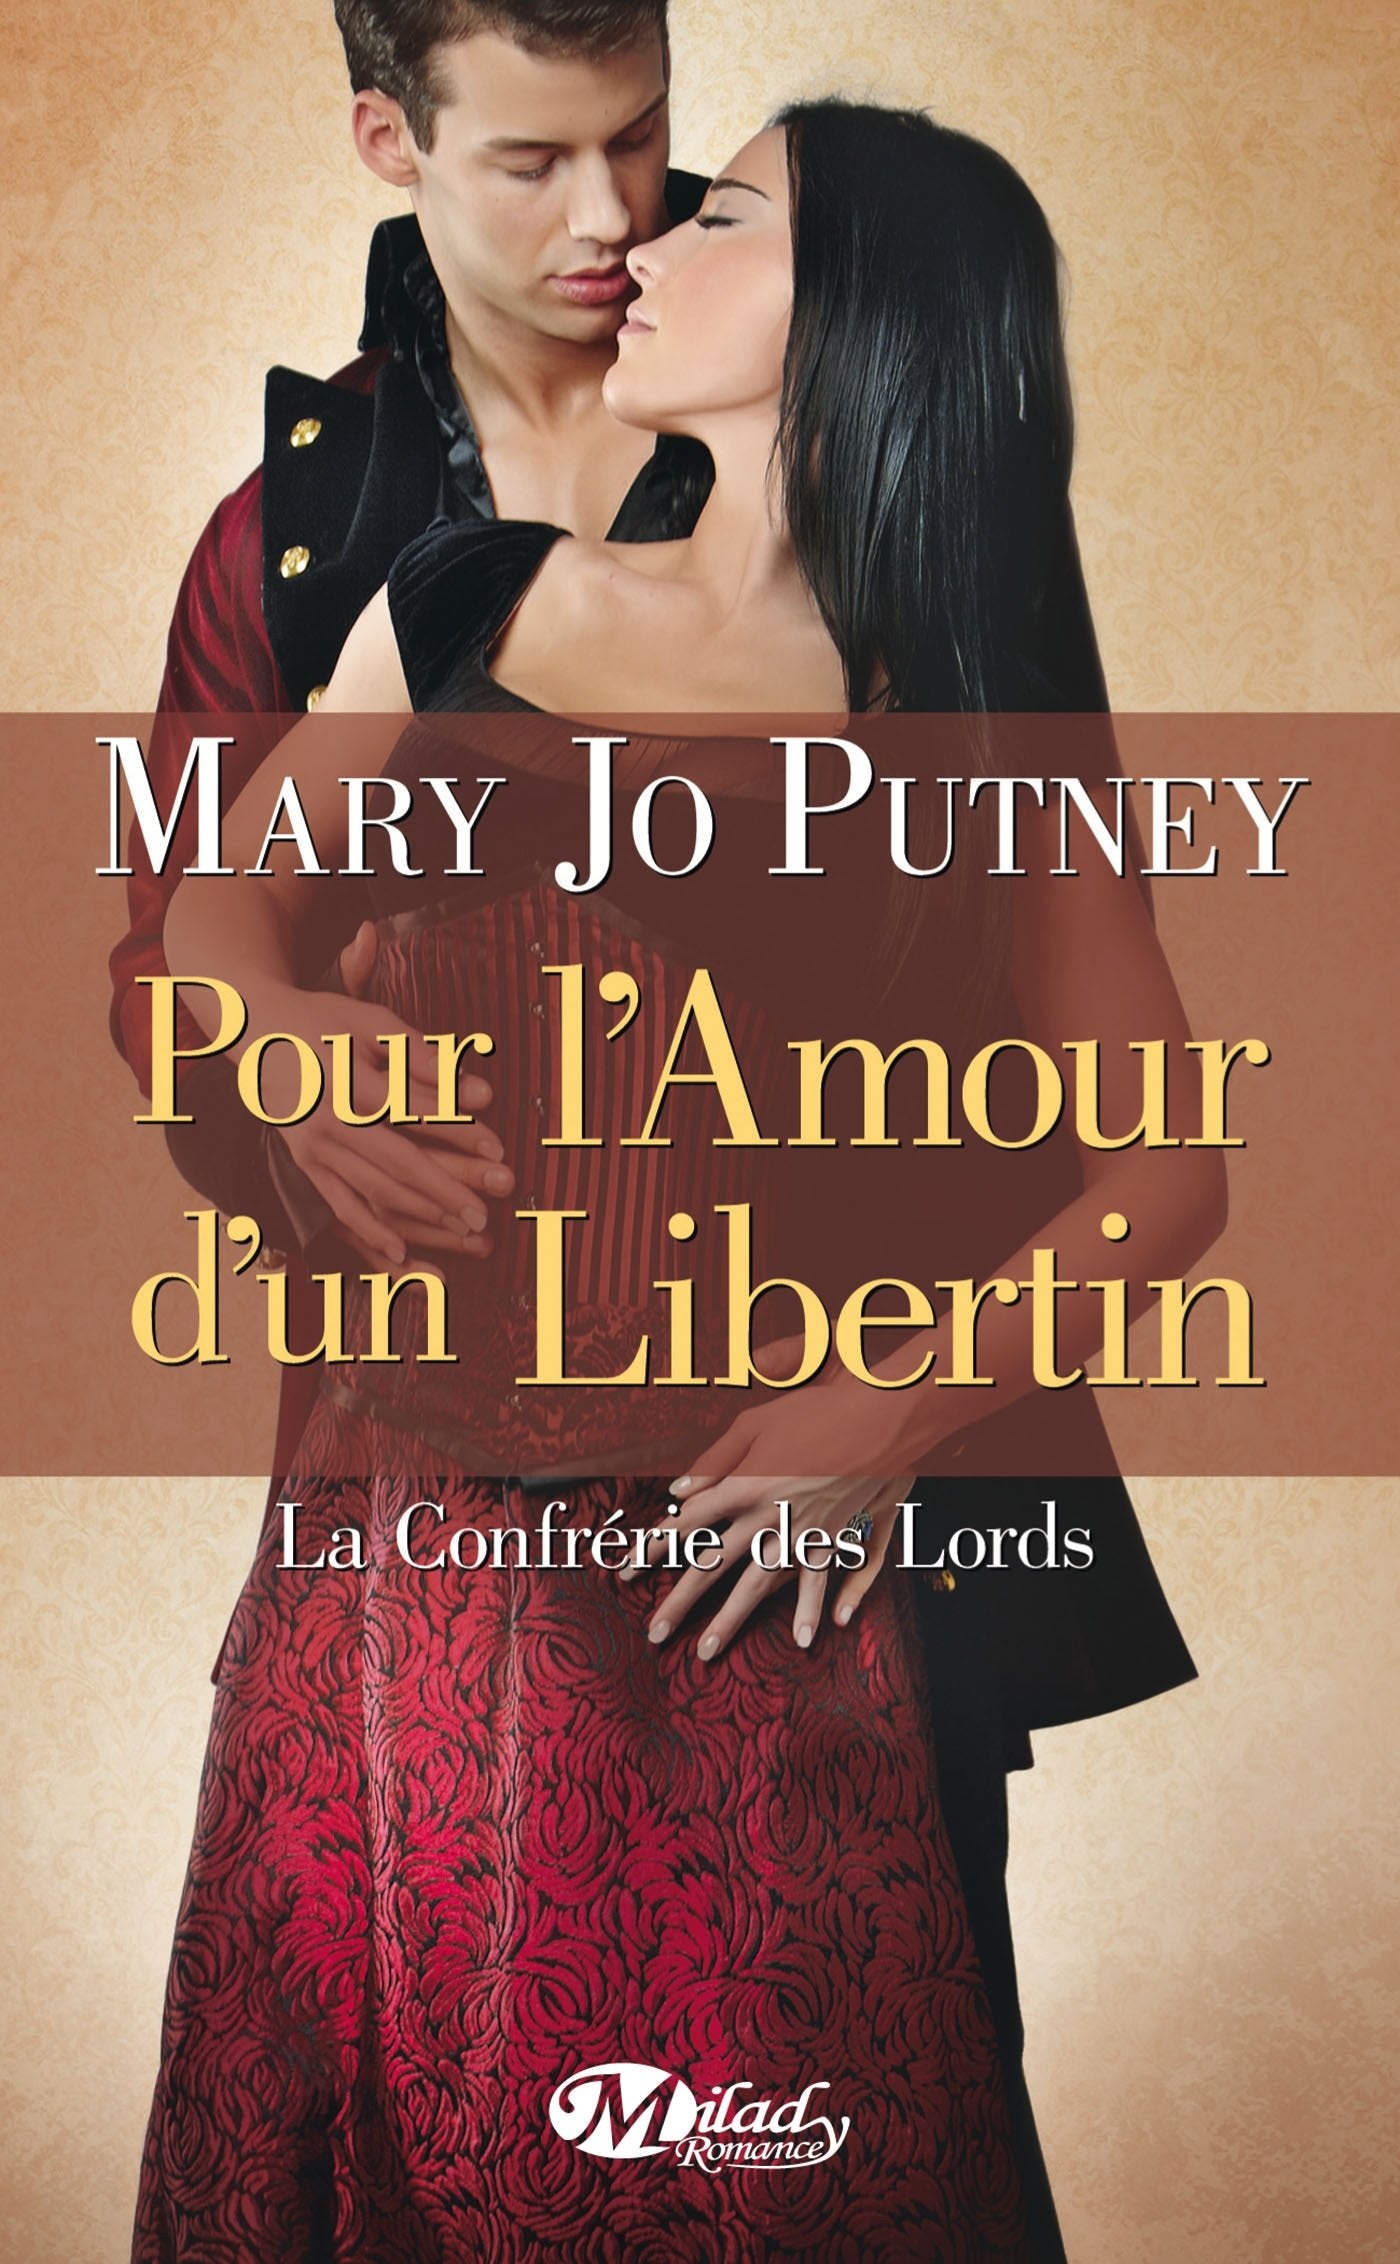 Livre ISBN 2811212175 Pour l'amour d'un libertin (Mary Jo Putney)